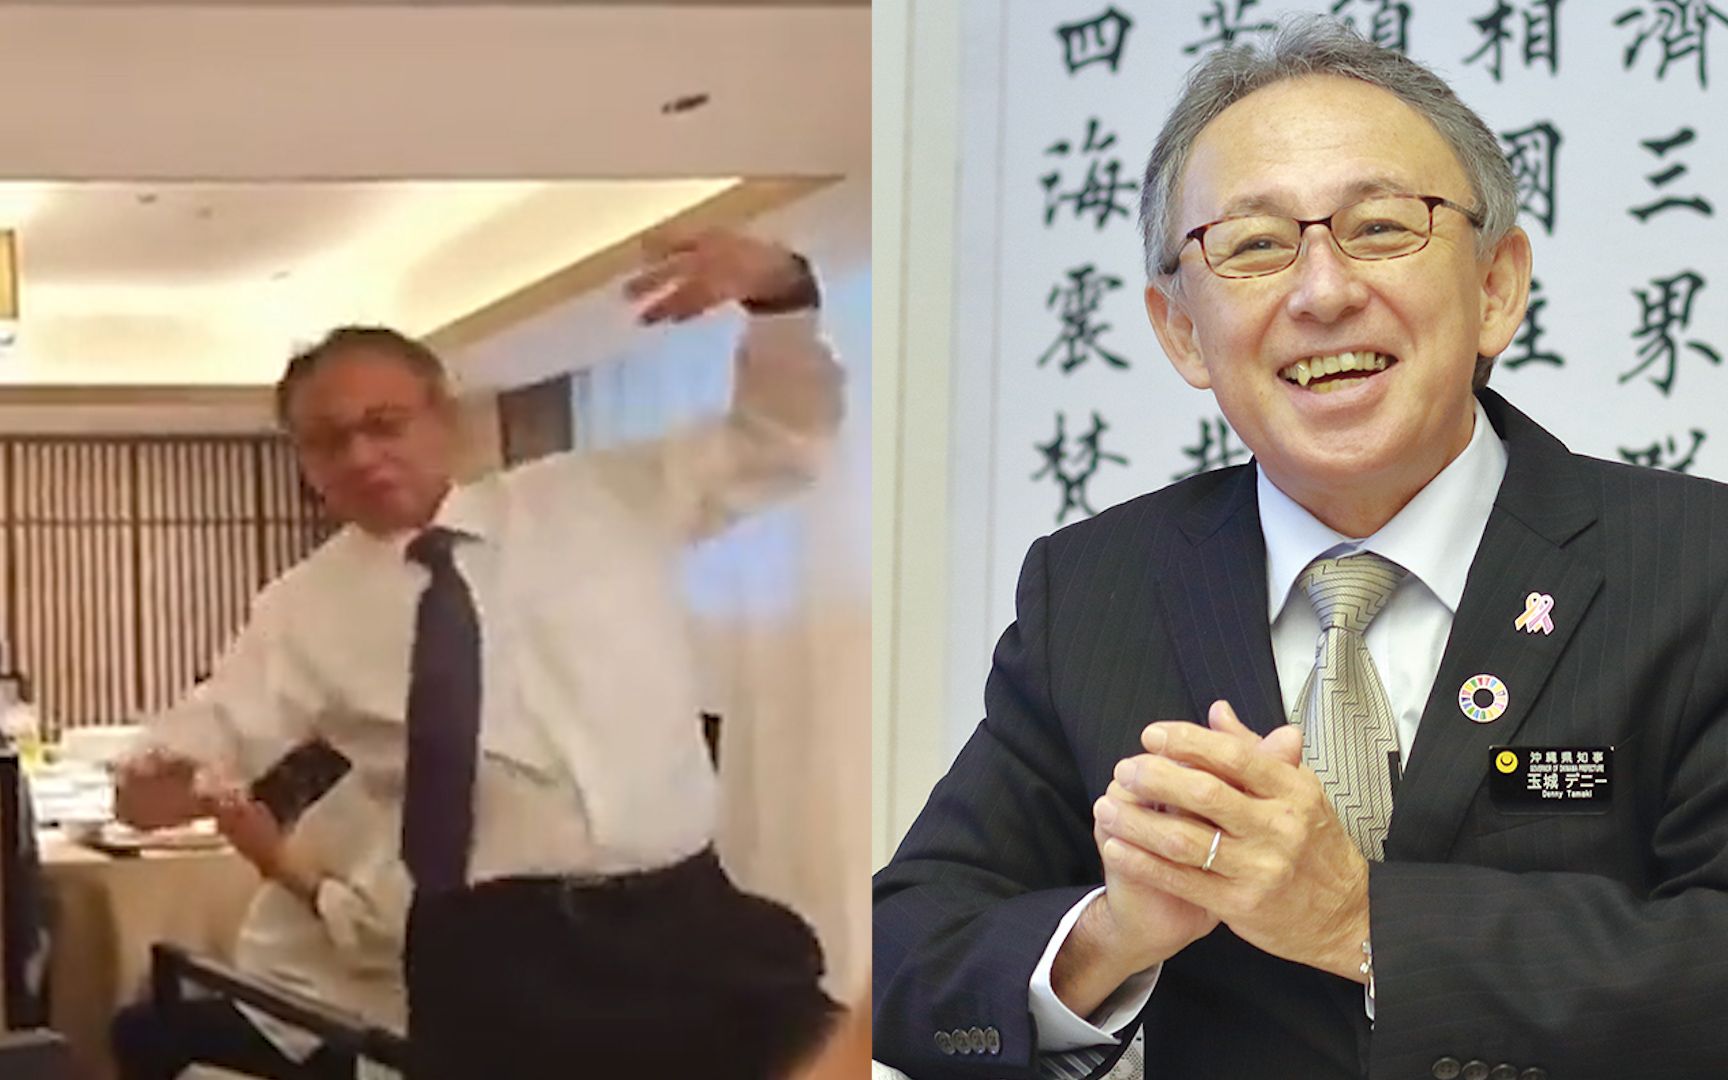 冲绳知事在北京宴会上跳民族舞在日本网络热传，本人发推澄清